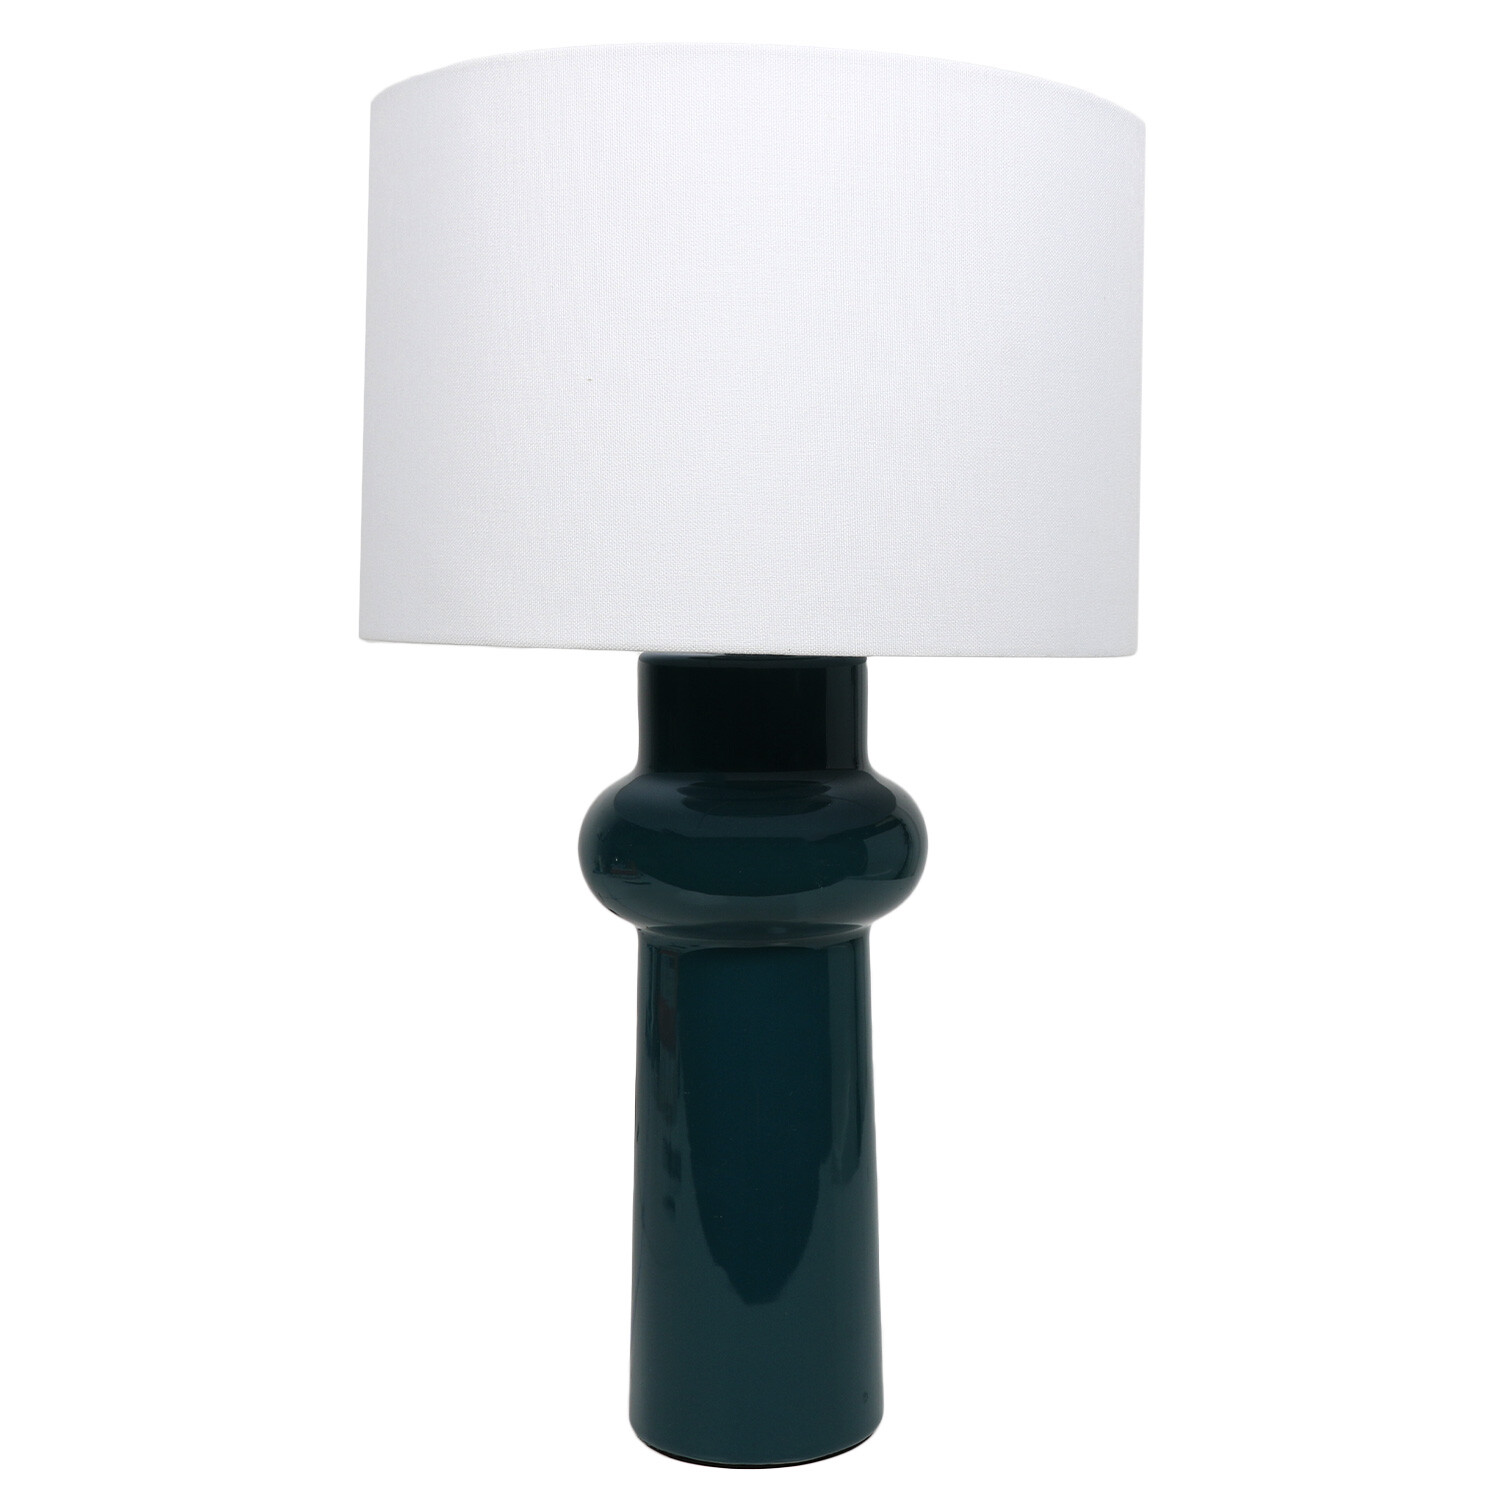 Atlantica Table Lamp - Teal Image 1